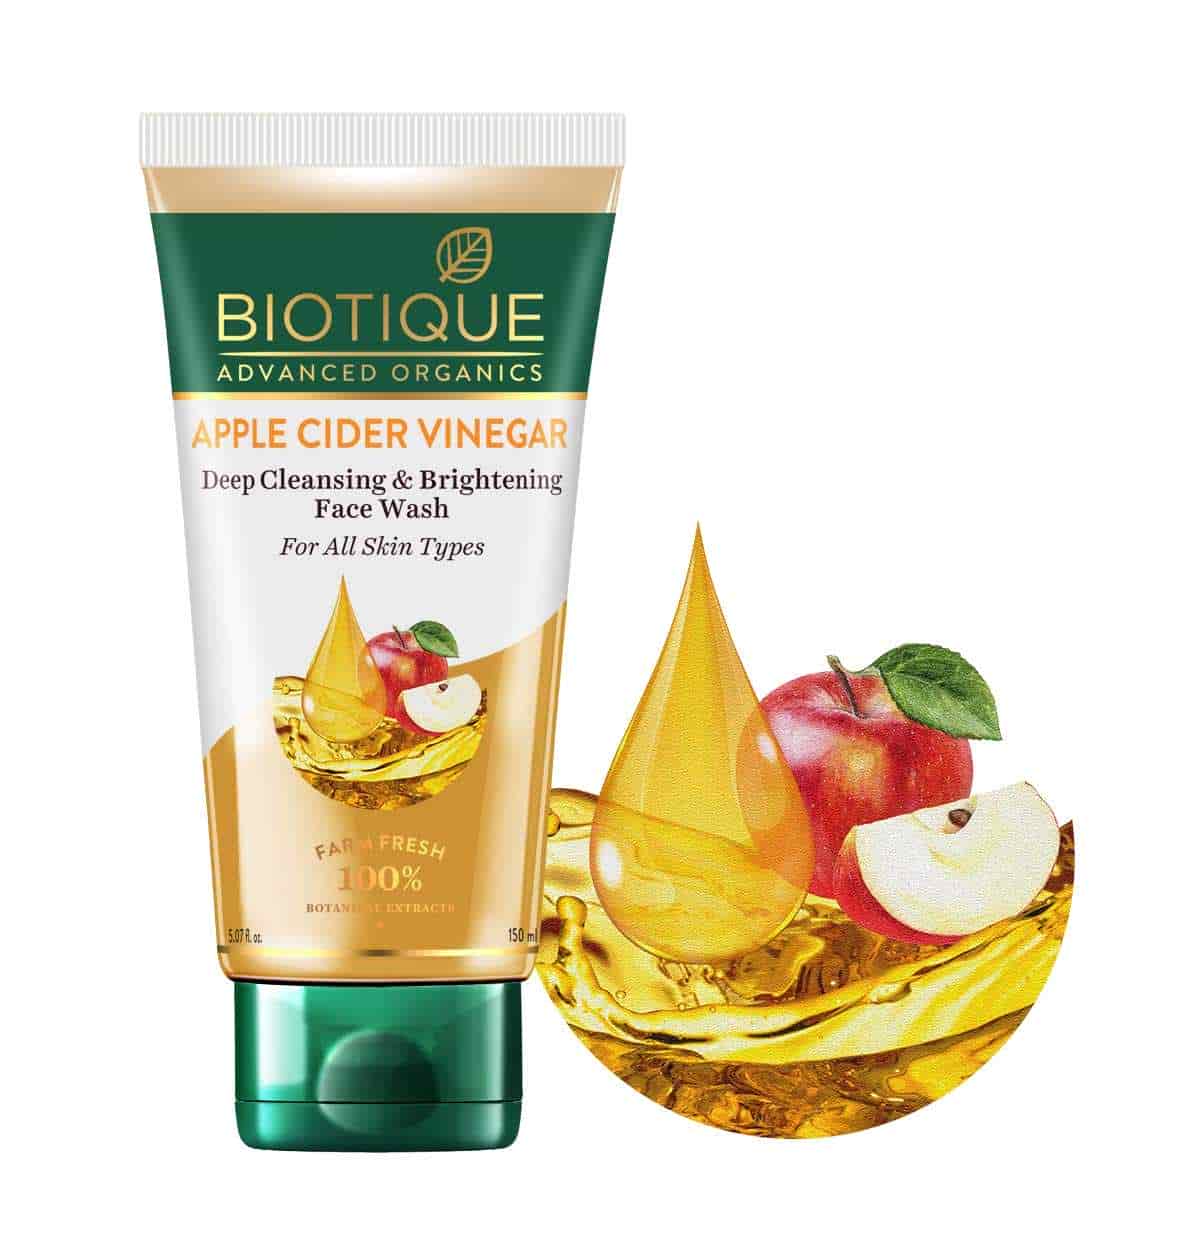 Biotique Apple Cider Vinegar Deep Cleansing Face Wash